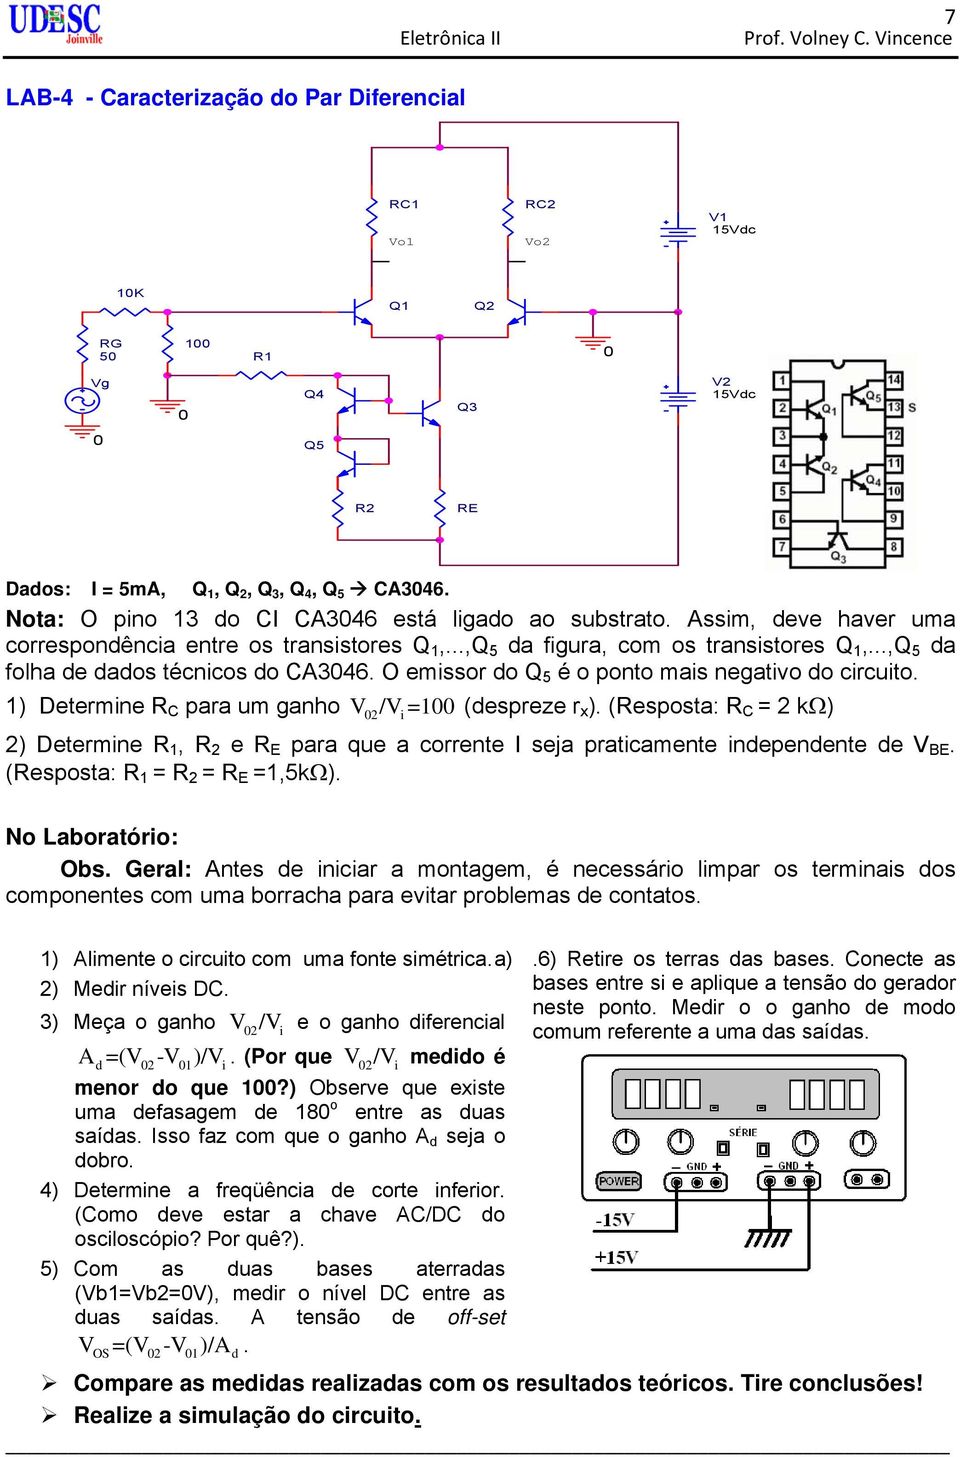 Assim, deve haver uma correspondência entre os transistores Q 1,...,Q 5 da figura, com os transistores Q 1,...,Q 5 da folha de dados técnicos do CA3046.